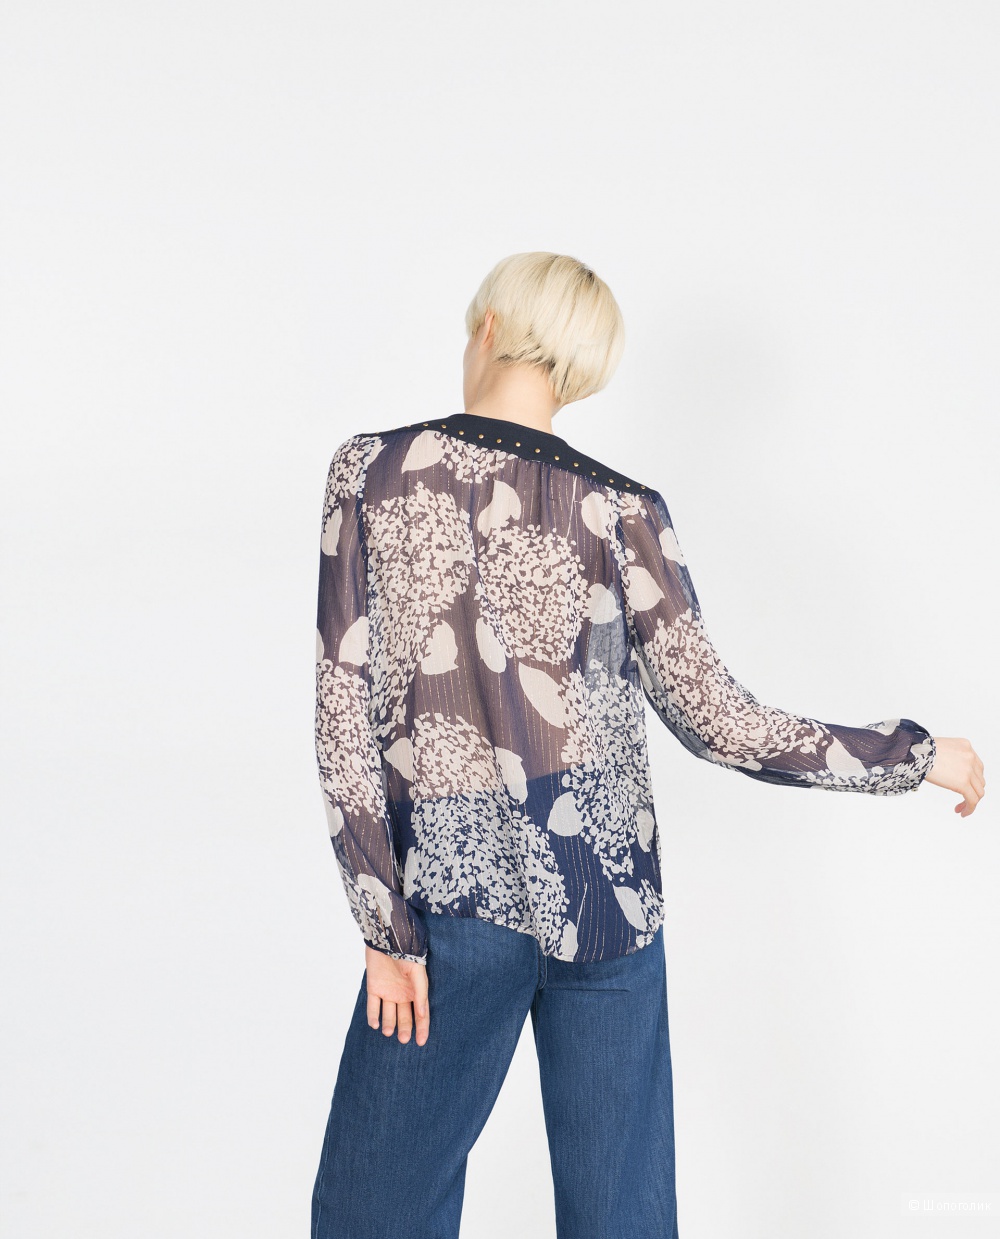 Блузка Zara 100% шелк с люрексом, размер S, новая без бирок